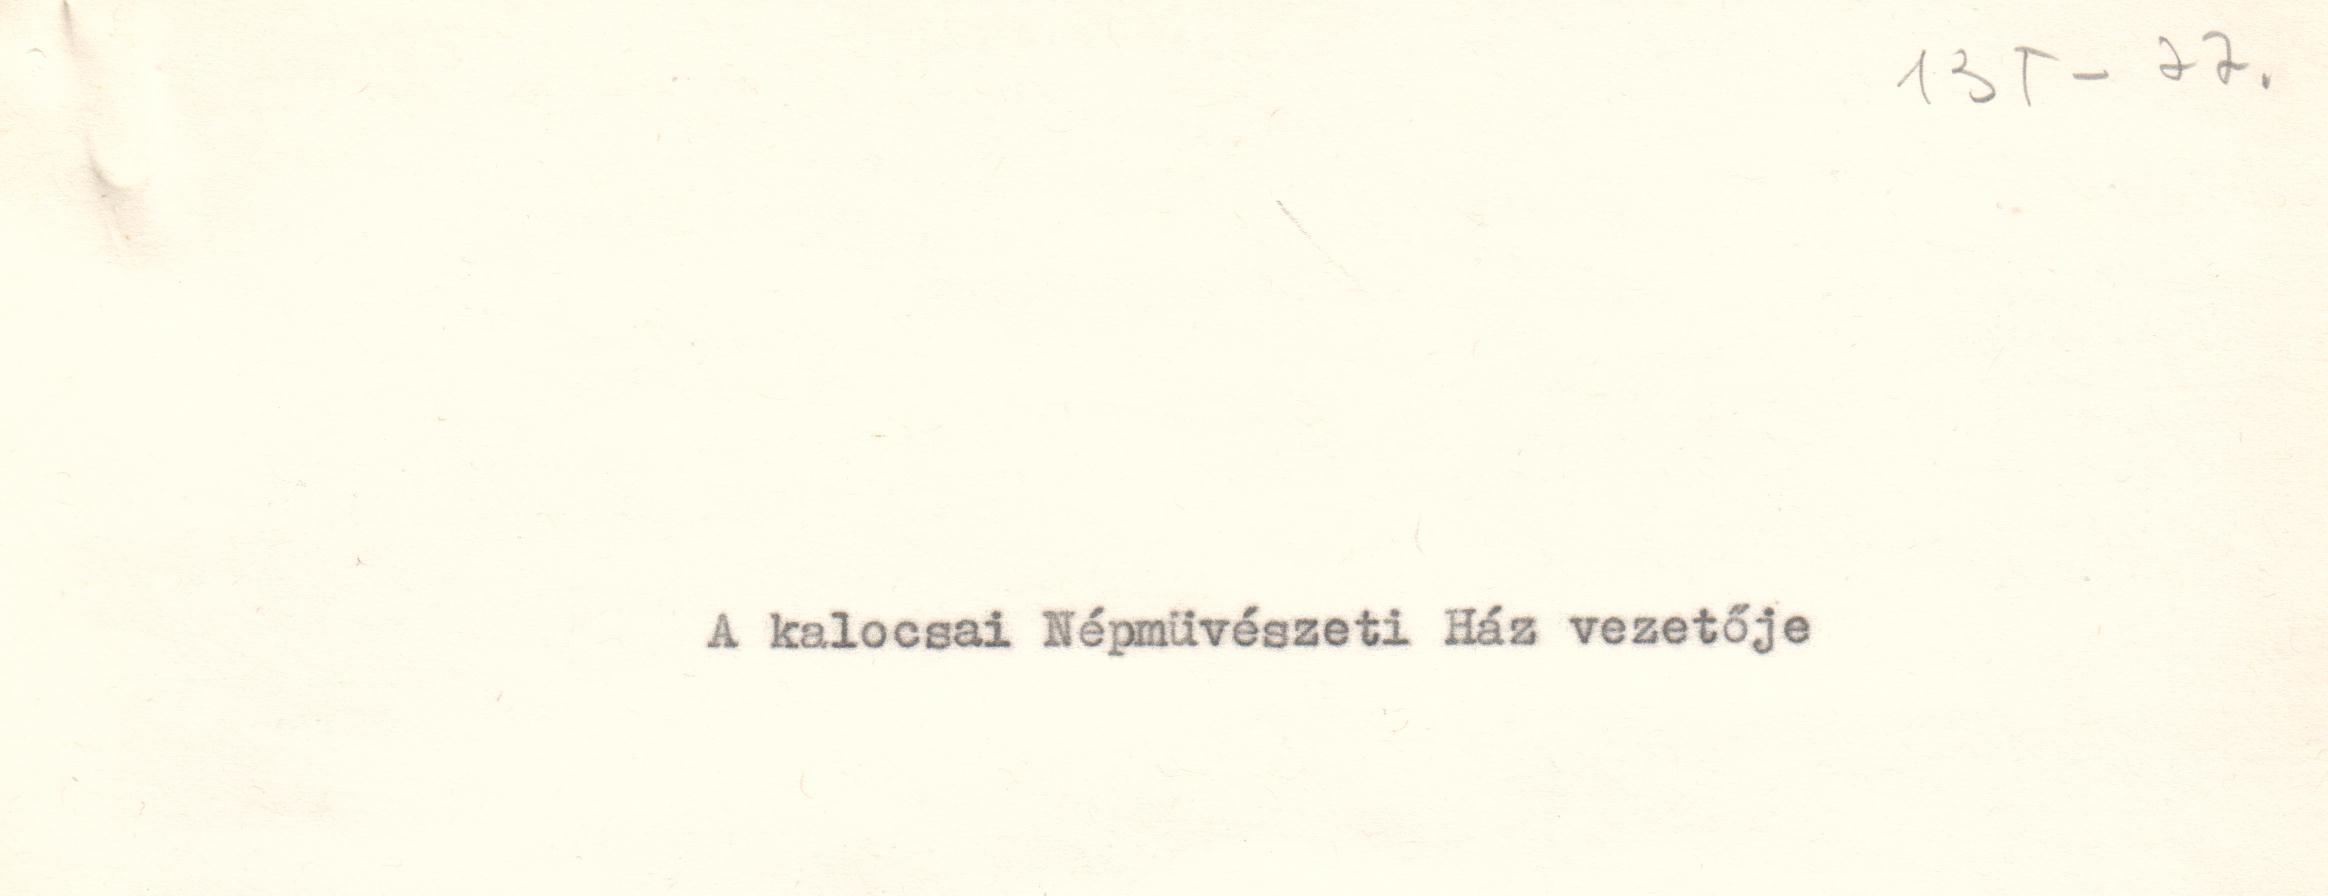 A kalocsai Népművészeti Ház tervezett vezetőjének szövege. /Magnetofon mondta volna a vendégeknek./ (Viski Károly Múzeum Kalocsa RR-F)